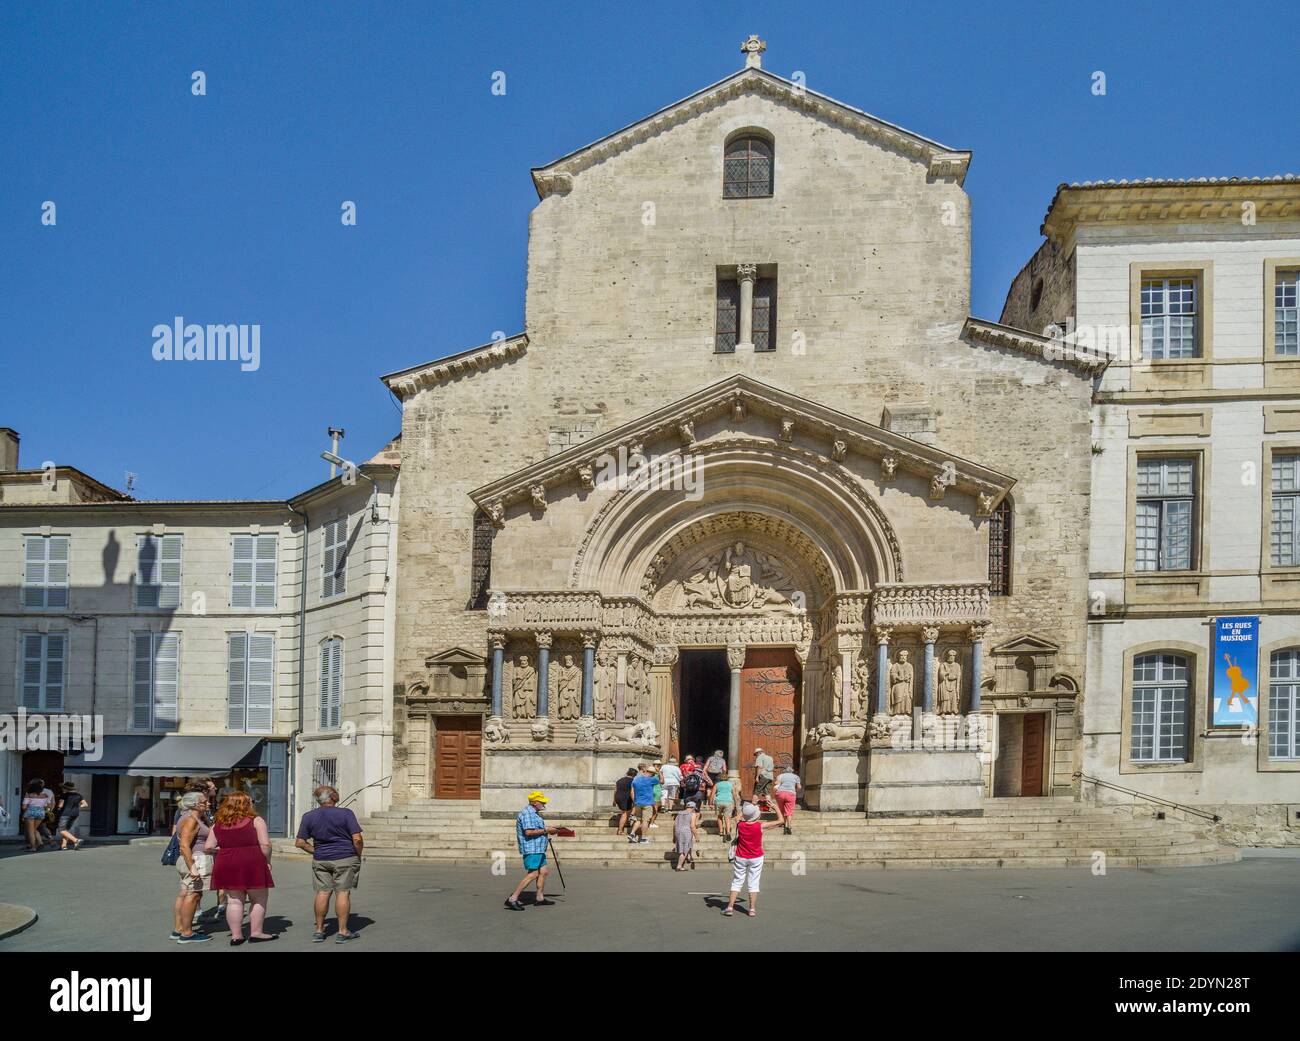 Portal der Cathédrale Saint-Trophime am Place de la République, Arles, Departement Bouches-du-Rhône, Südfrankreich Stockfoto